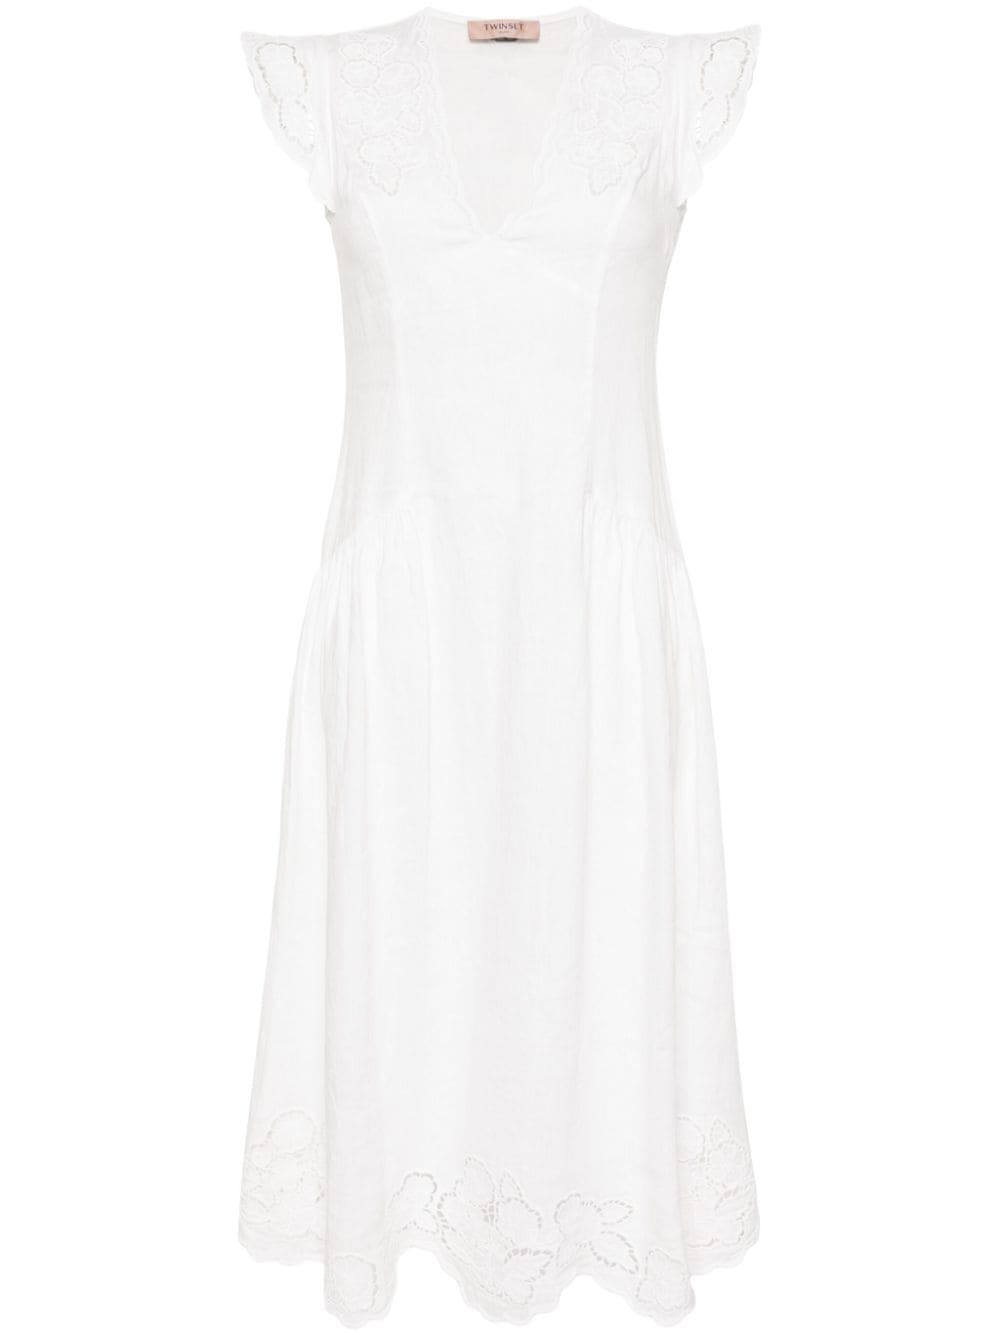 TWINSET Kleid linen midi dress - White von TWINSET